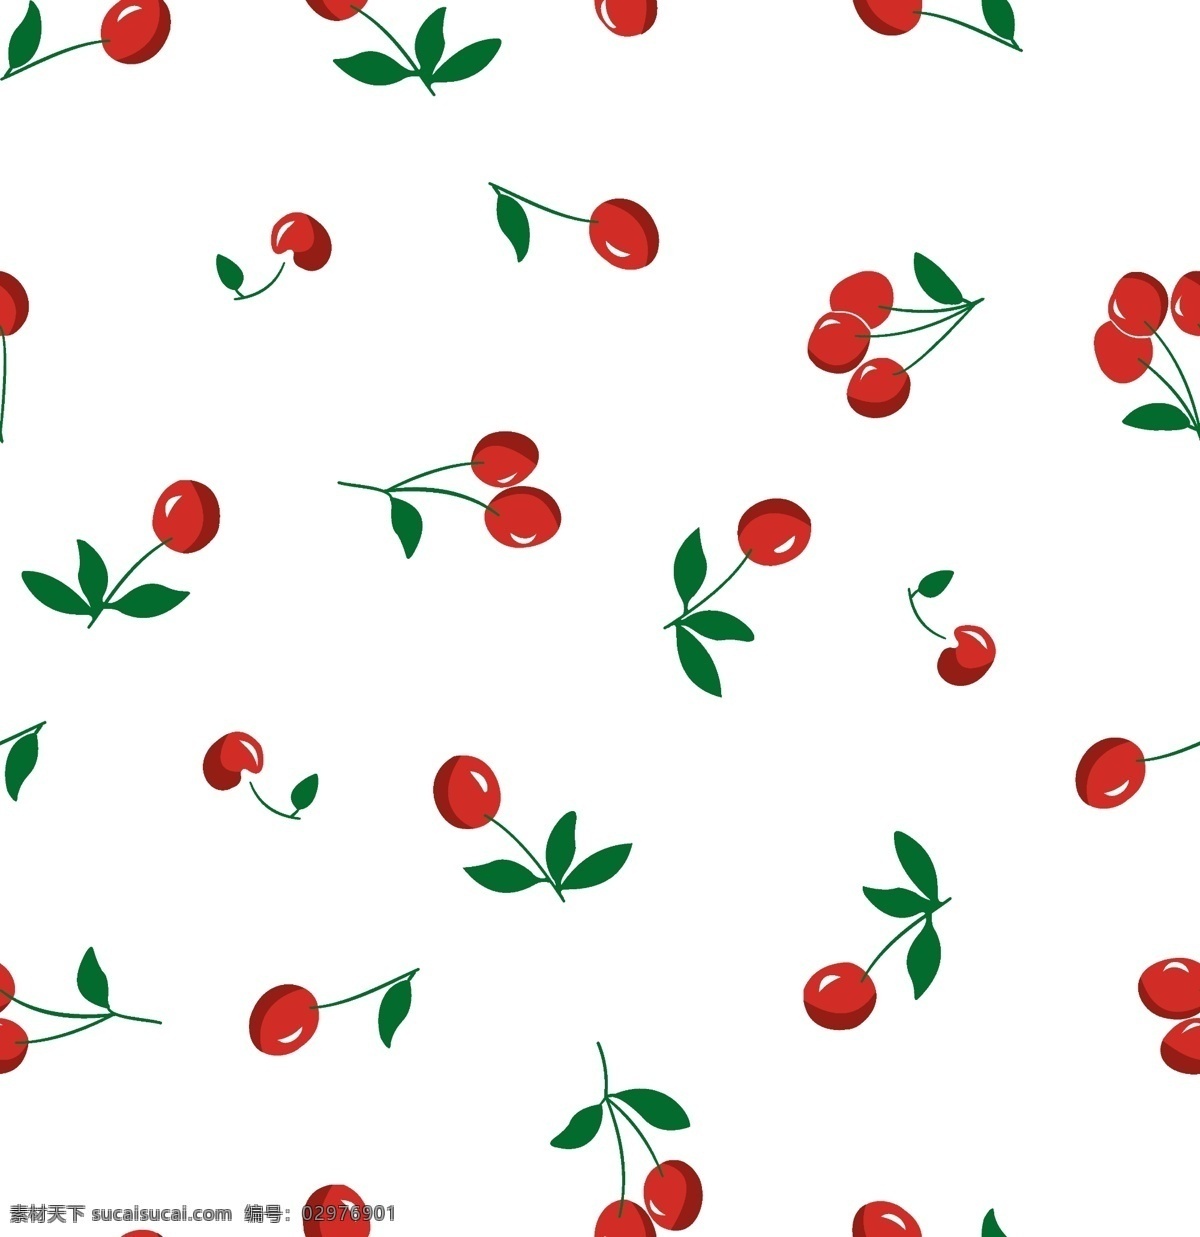 樱桃印花 数码印花 无缝图案 樱桃背景 白底樱桃 红樱桃 卡通樱桃 手绘樱桃